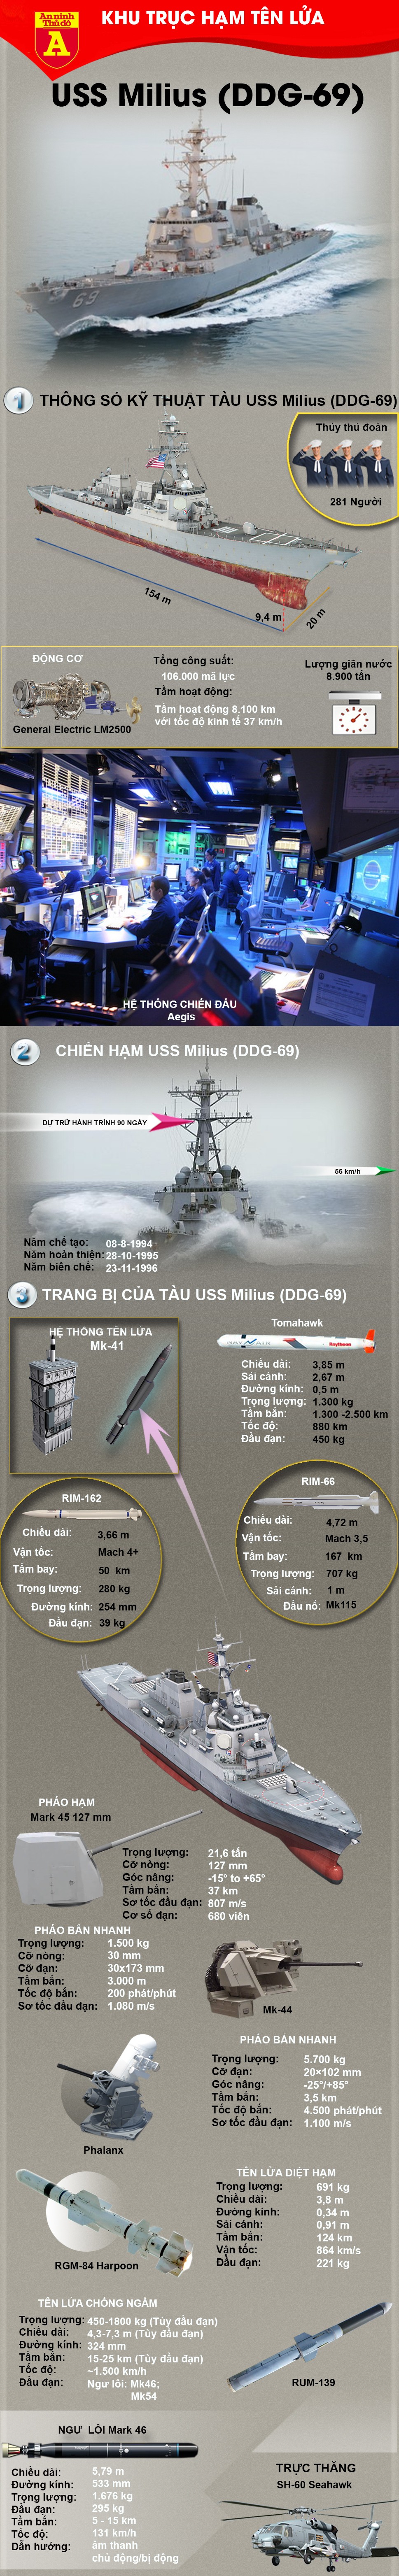 [ĐỒ HỌA] Mỹ bất ngờ gửi chiến hạm cực mạnh tới bán đảo Triều Tiên ảnh 2